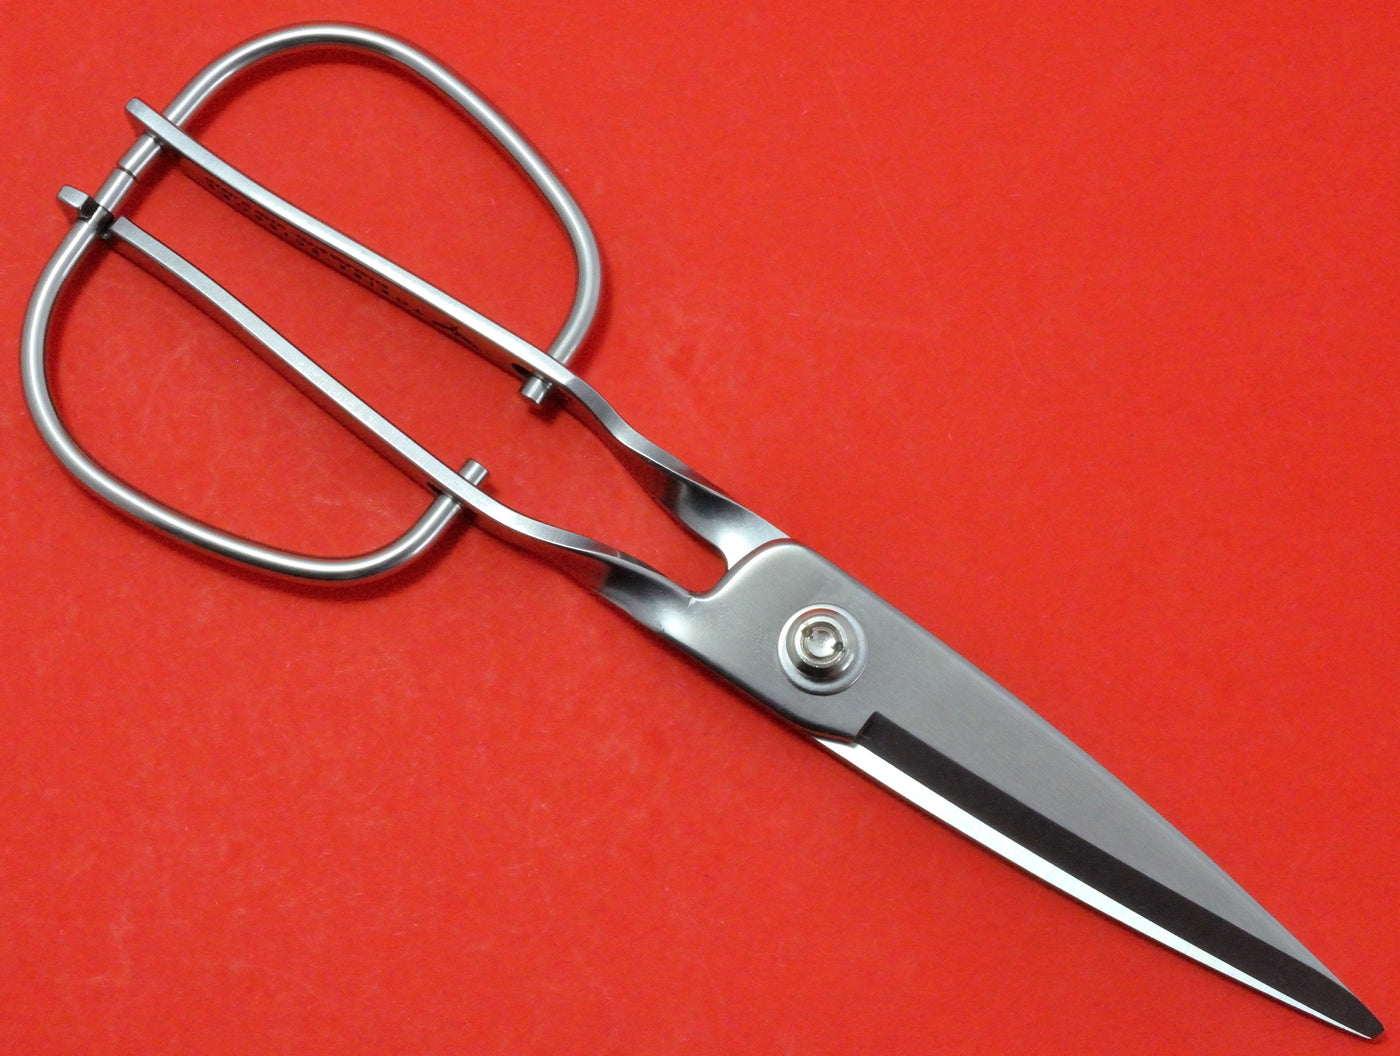 TORIBE kitchen household scissors stainless KS-203 KS203 made in Japan -  Osaka Tools